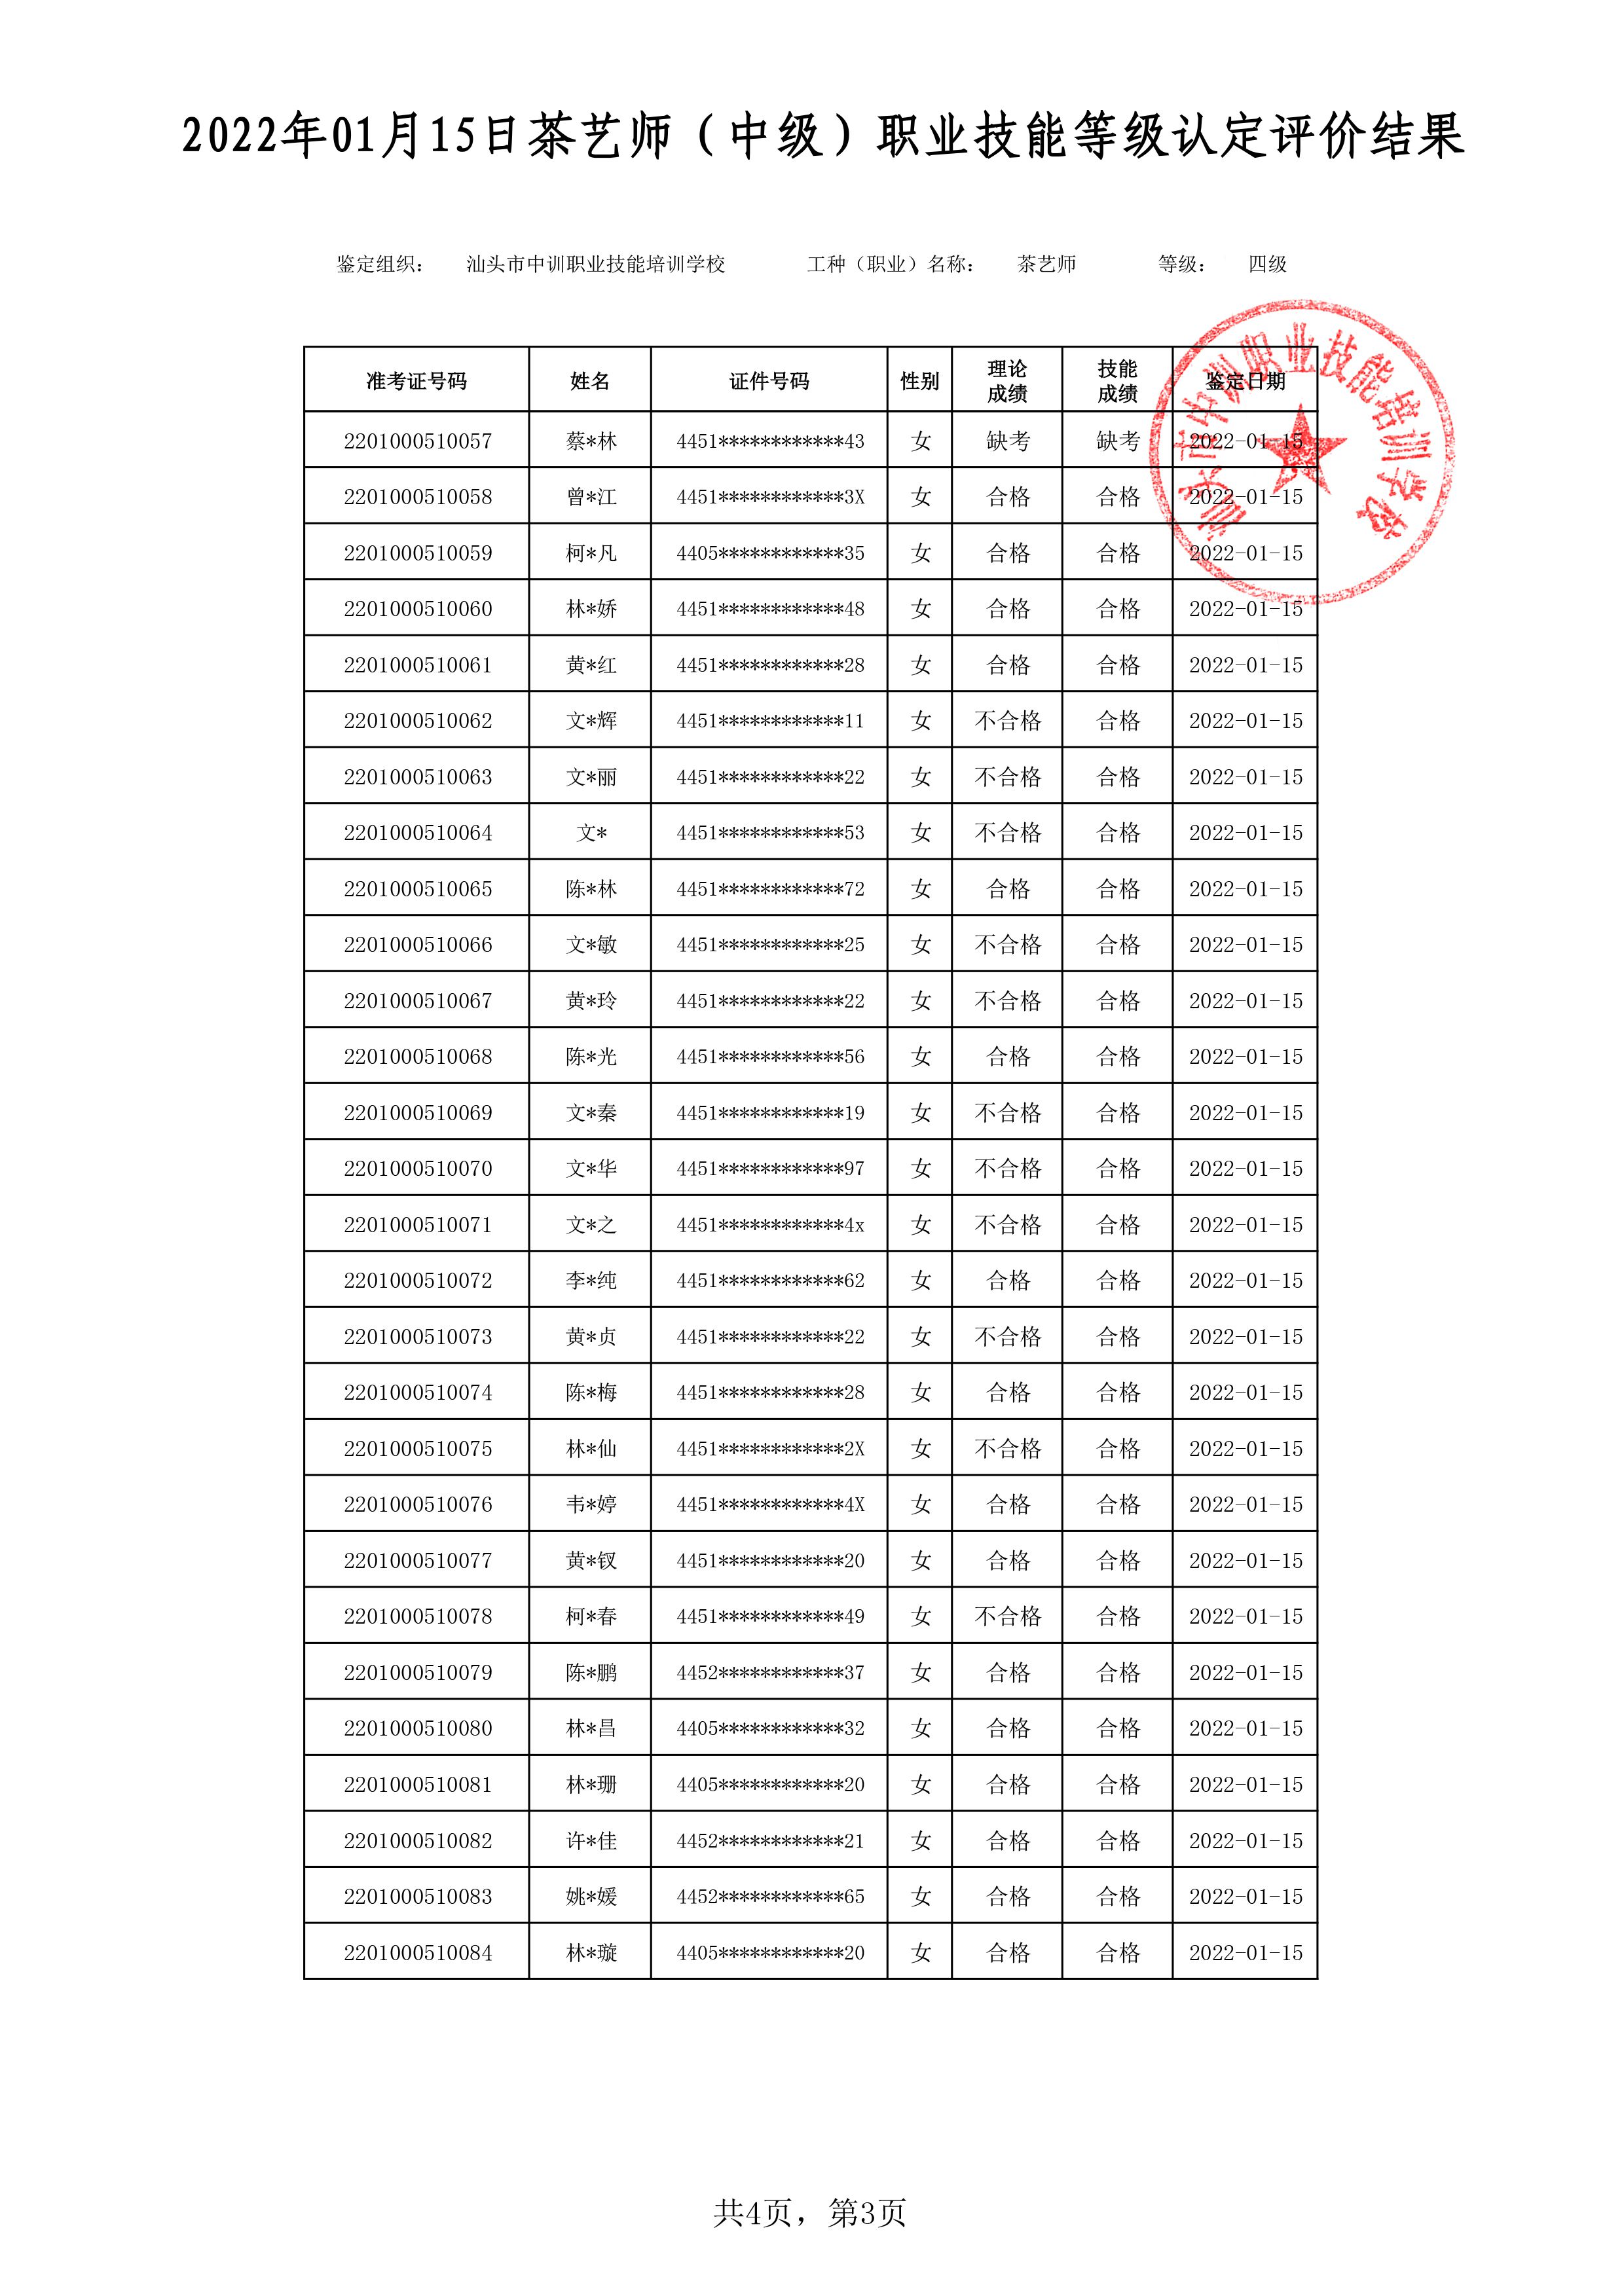 22-01-15四级茶艺师考试鉴定名册表-3 副本.jpg